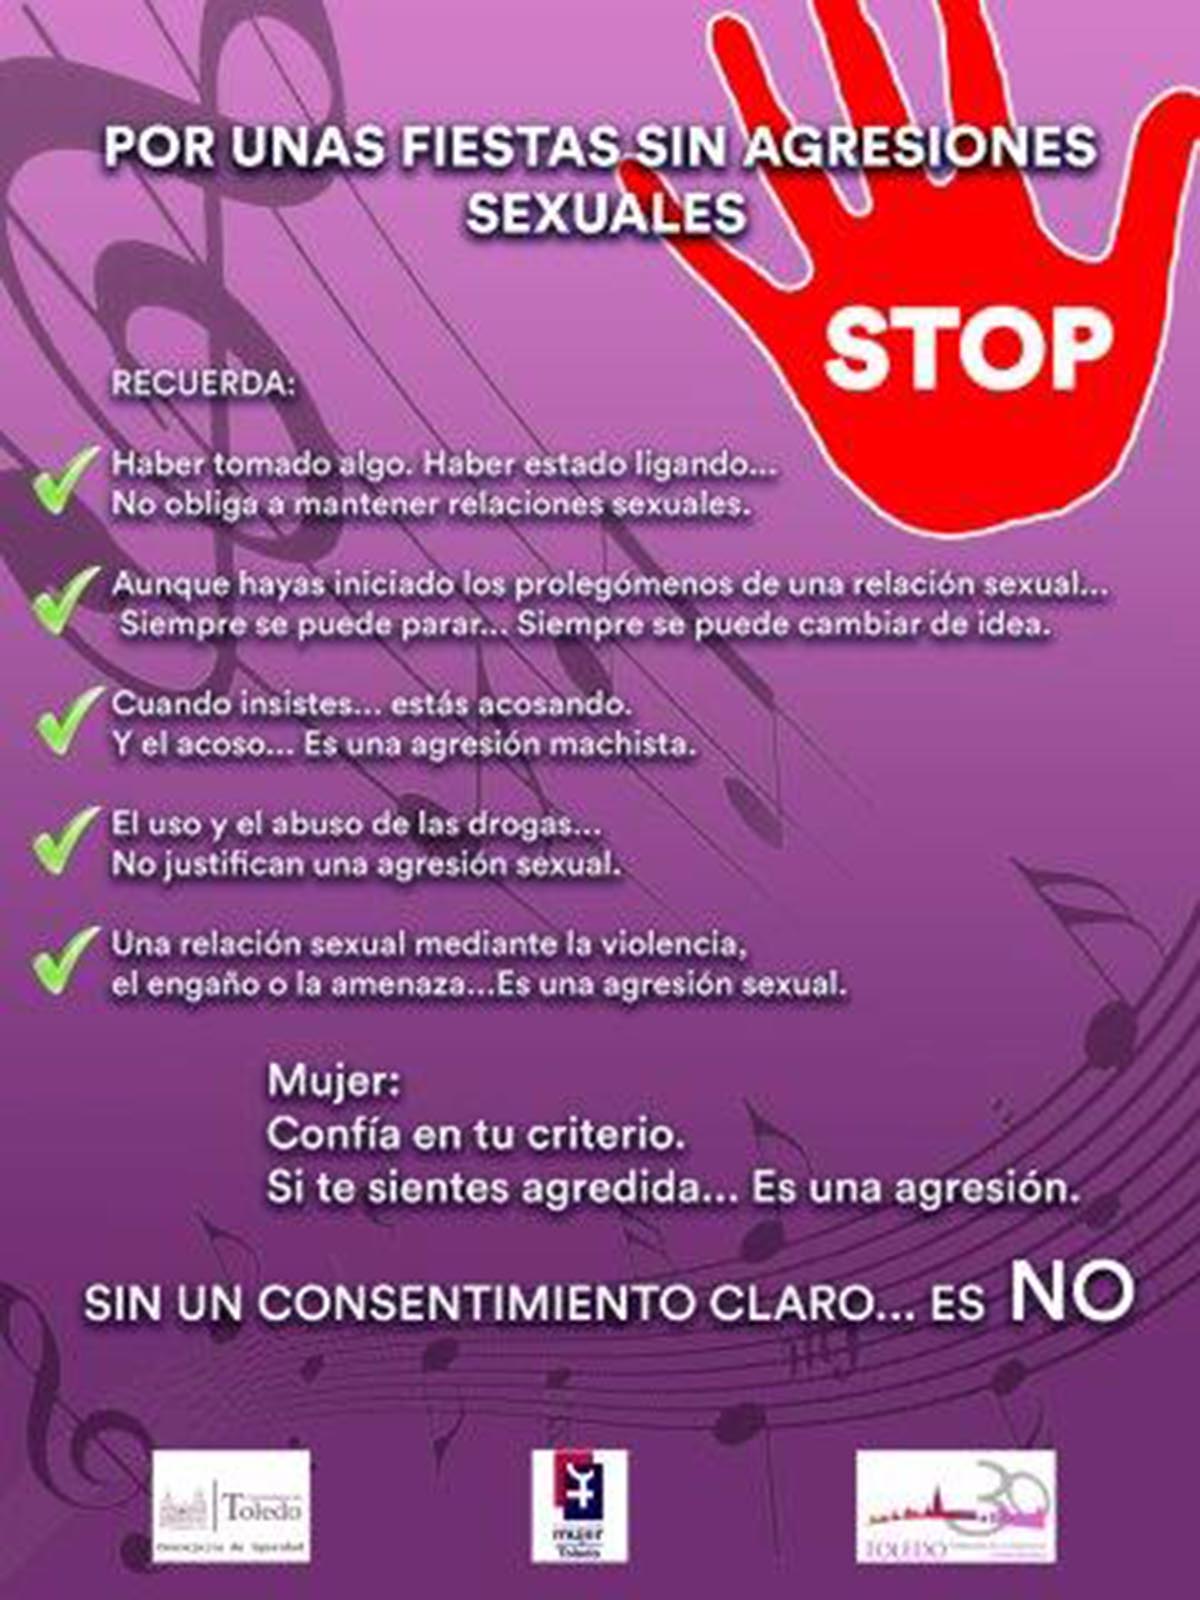 El cartel de la campaña contra la violencia sexual durante el Corpus